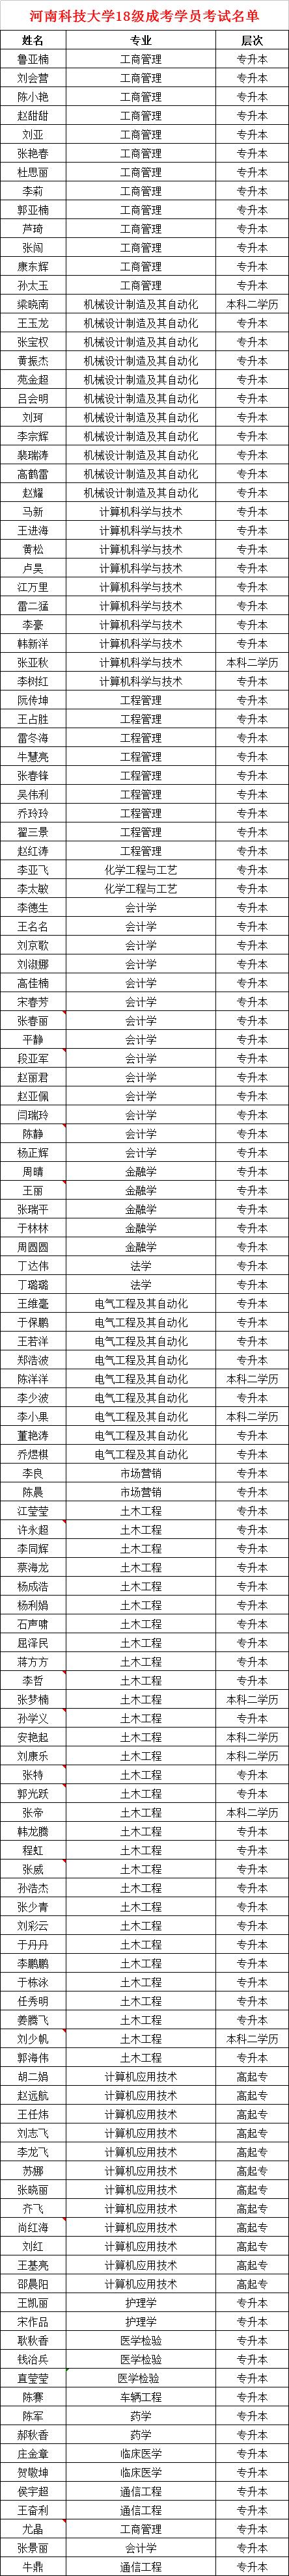 河南省科学技术类大学考试名单.png